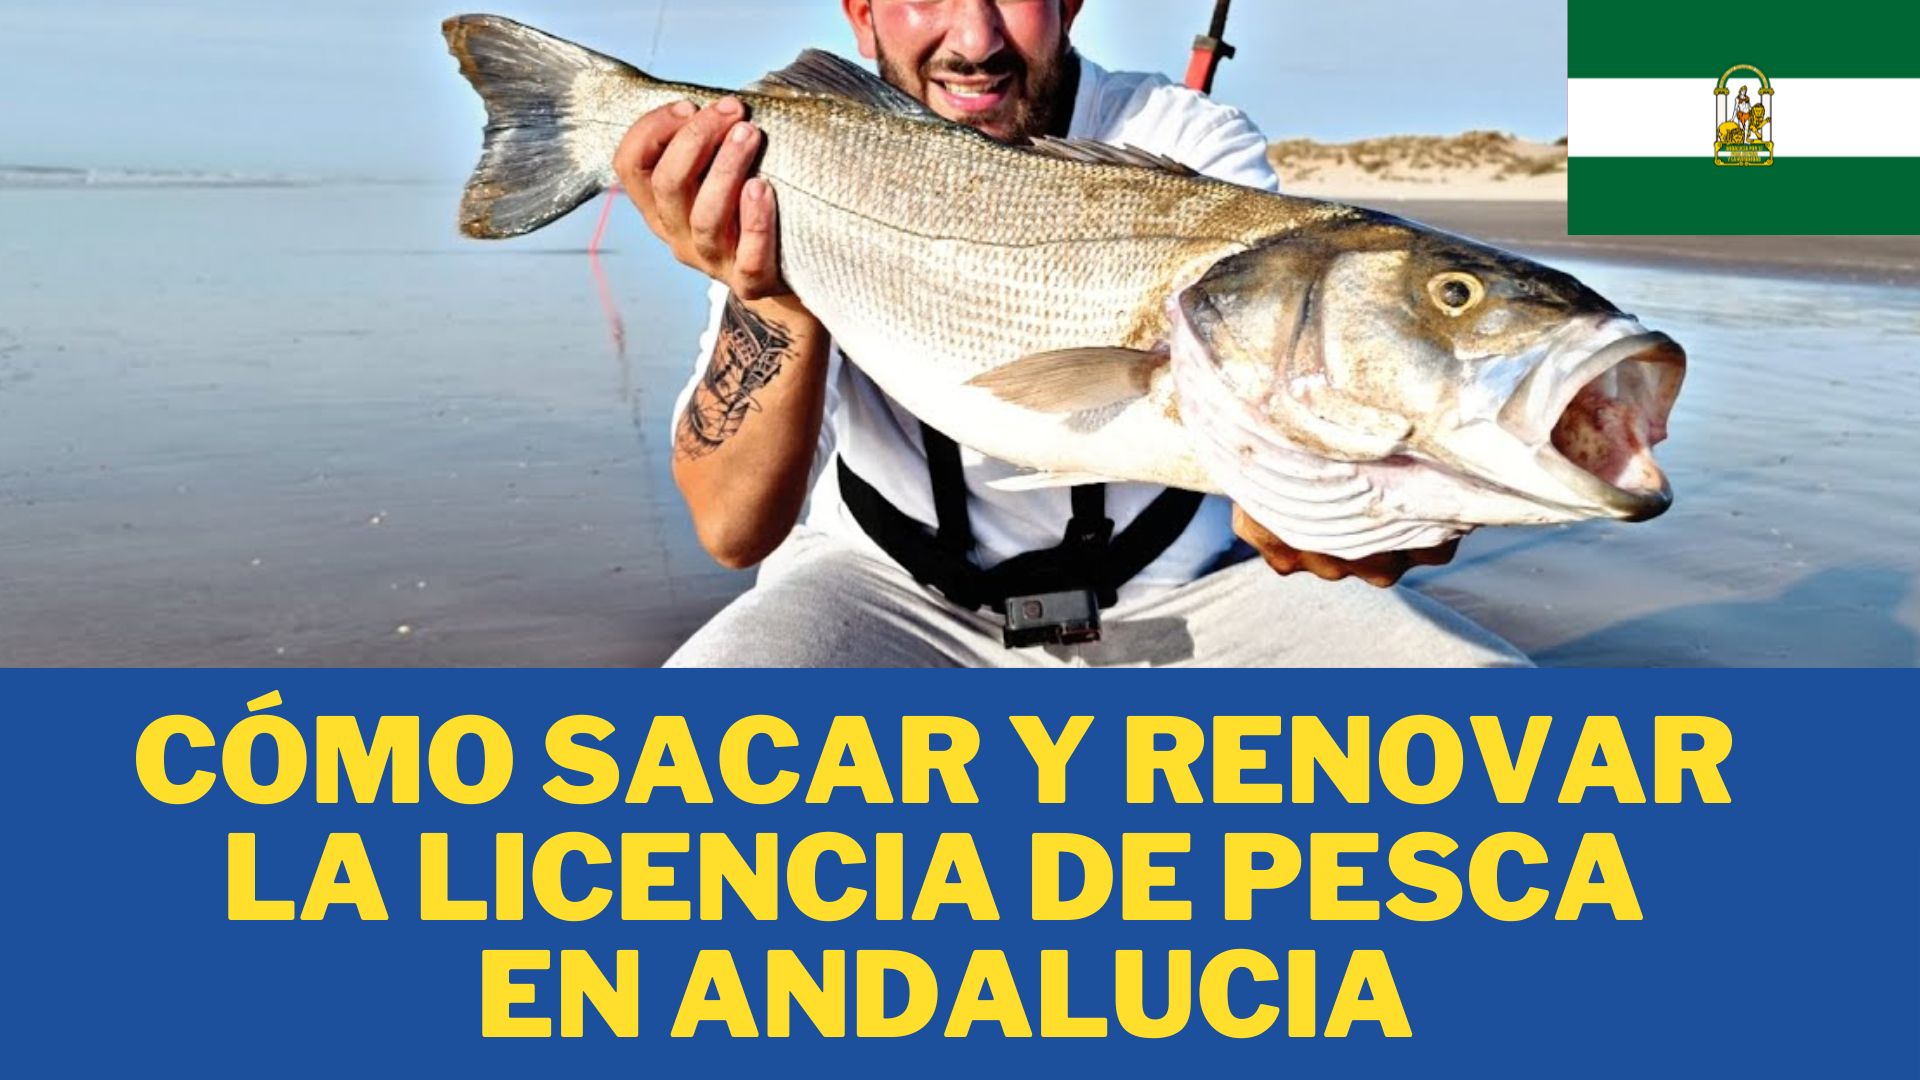 Cómo Sacar y Renovar la Licencia de Pesca en ANDALUCIA